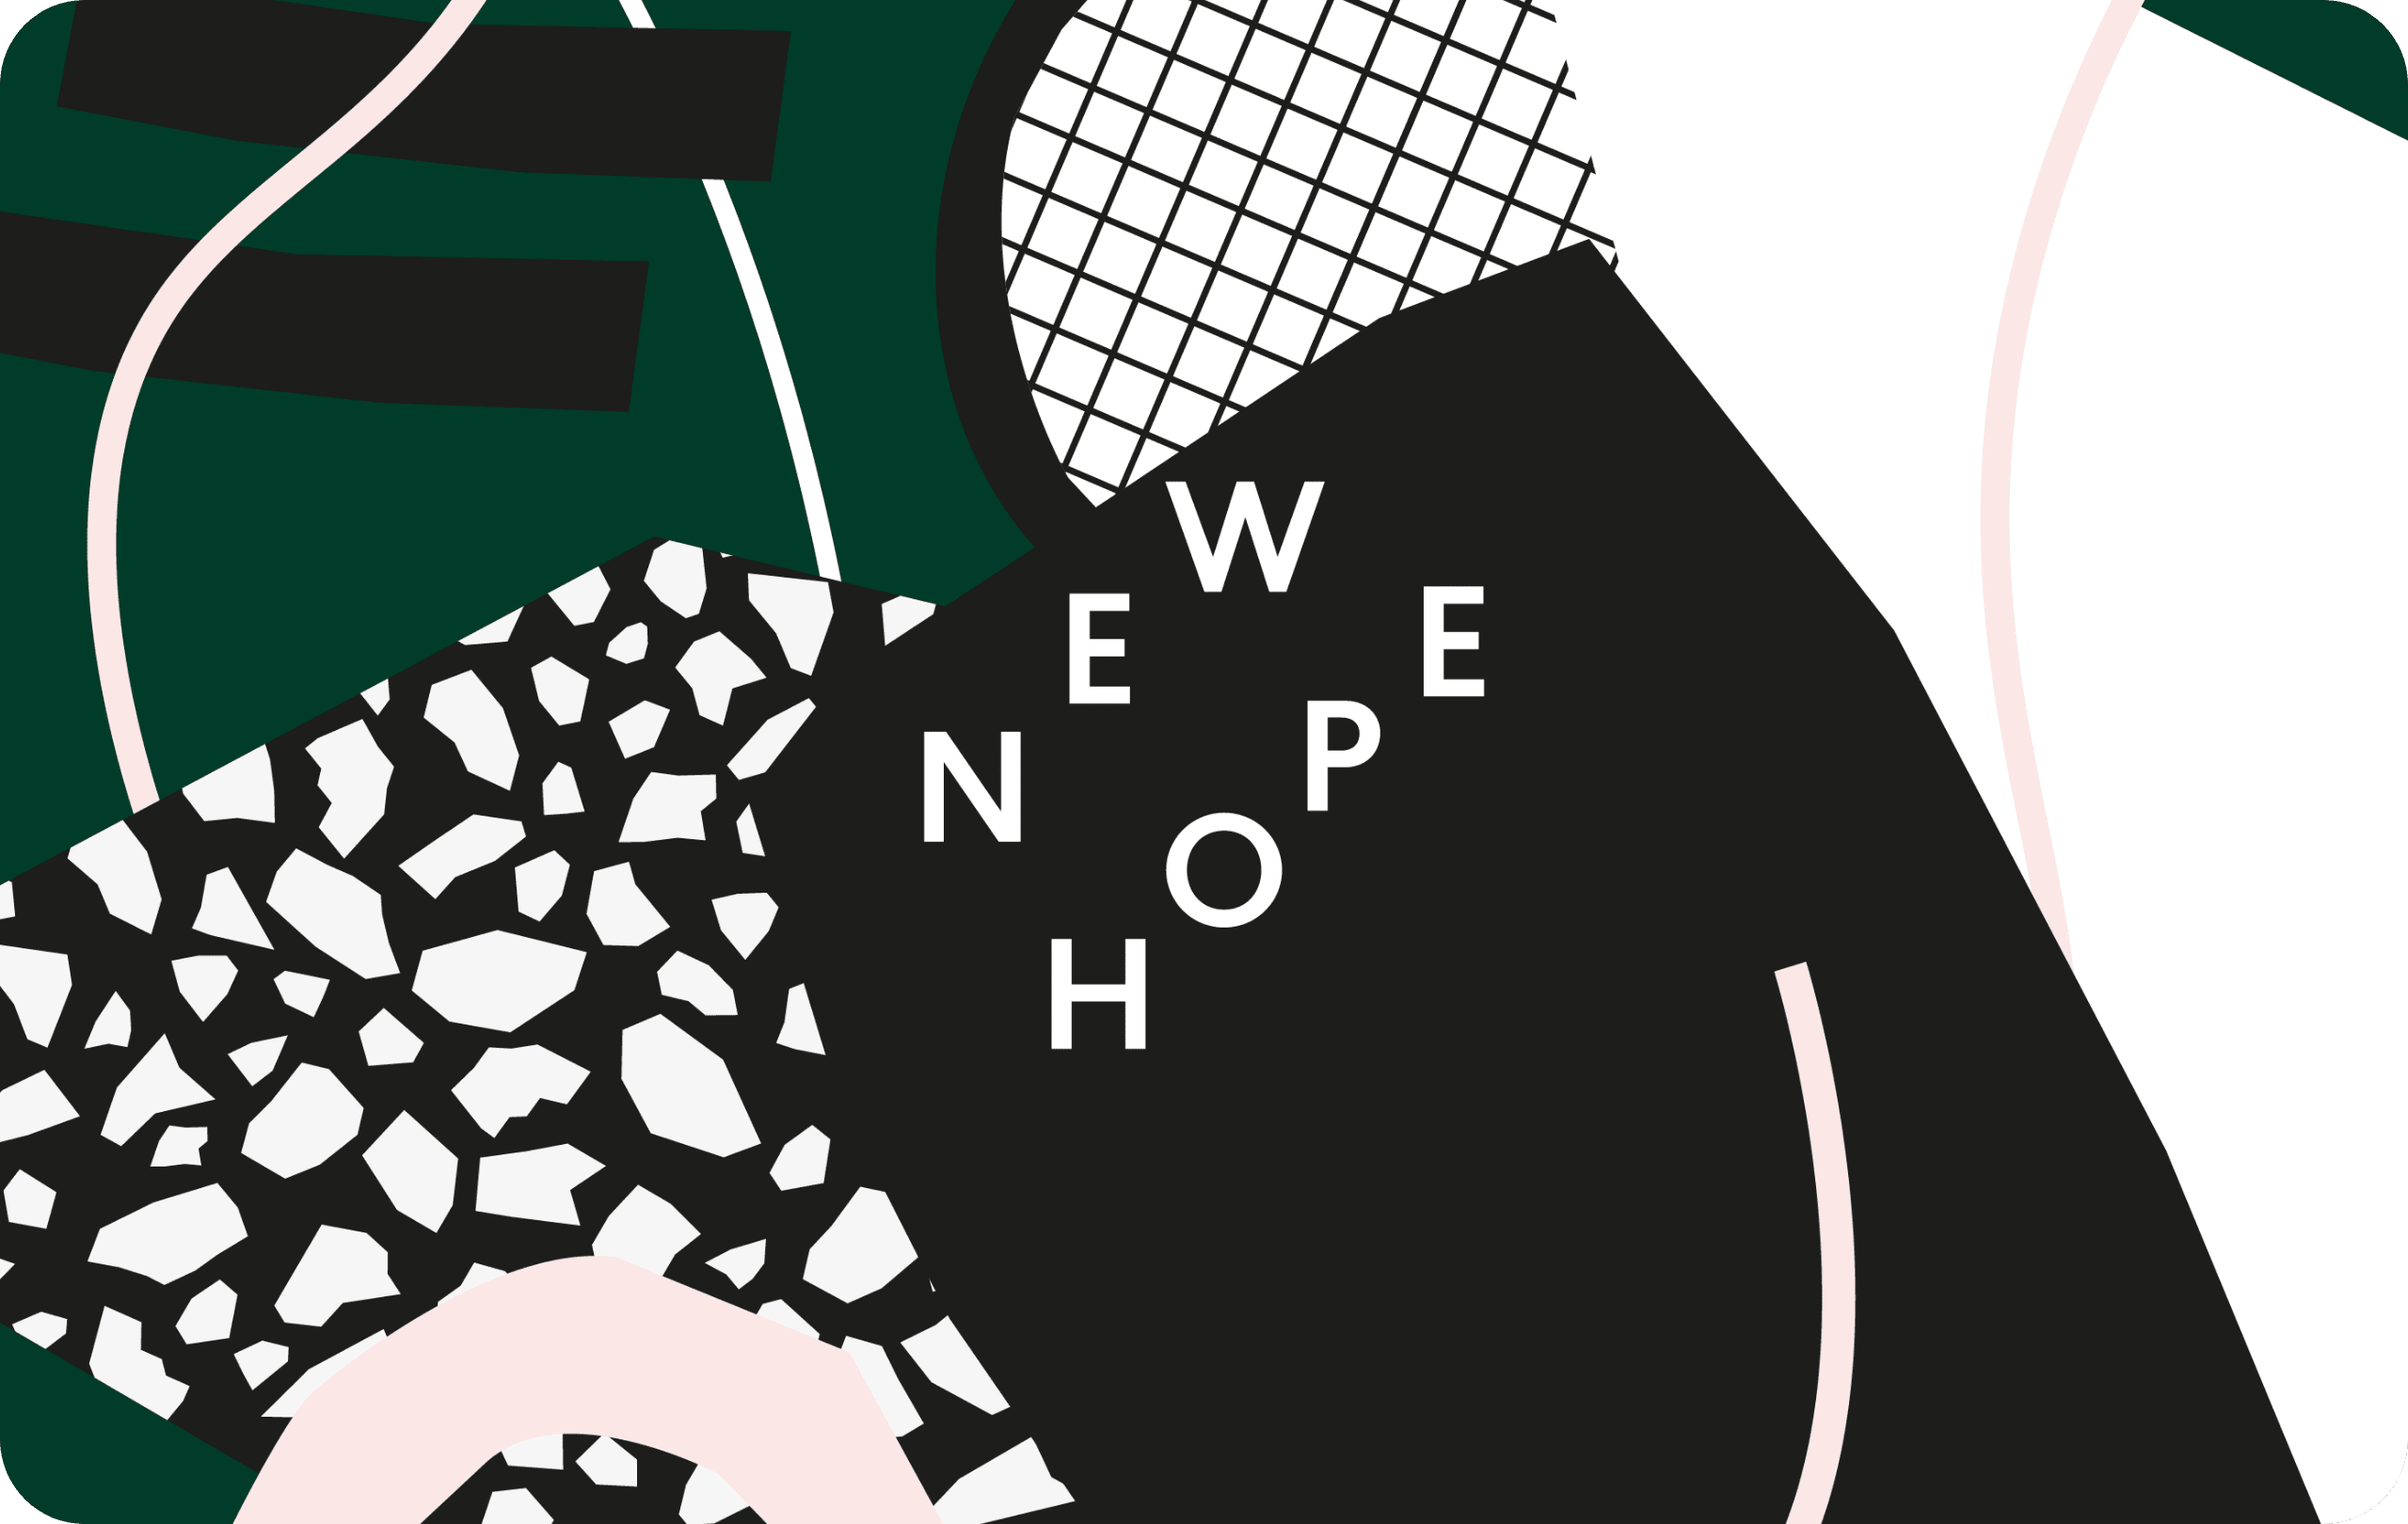 WF_NEWHOPE-02